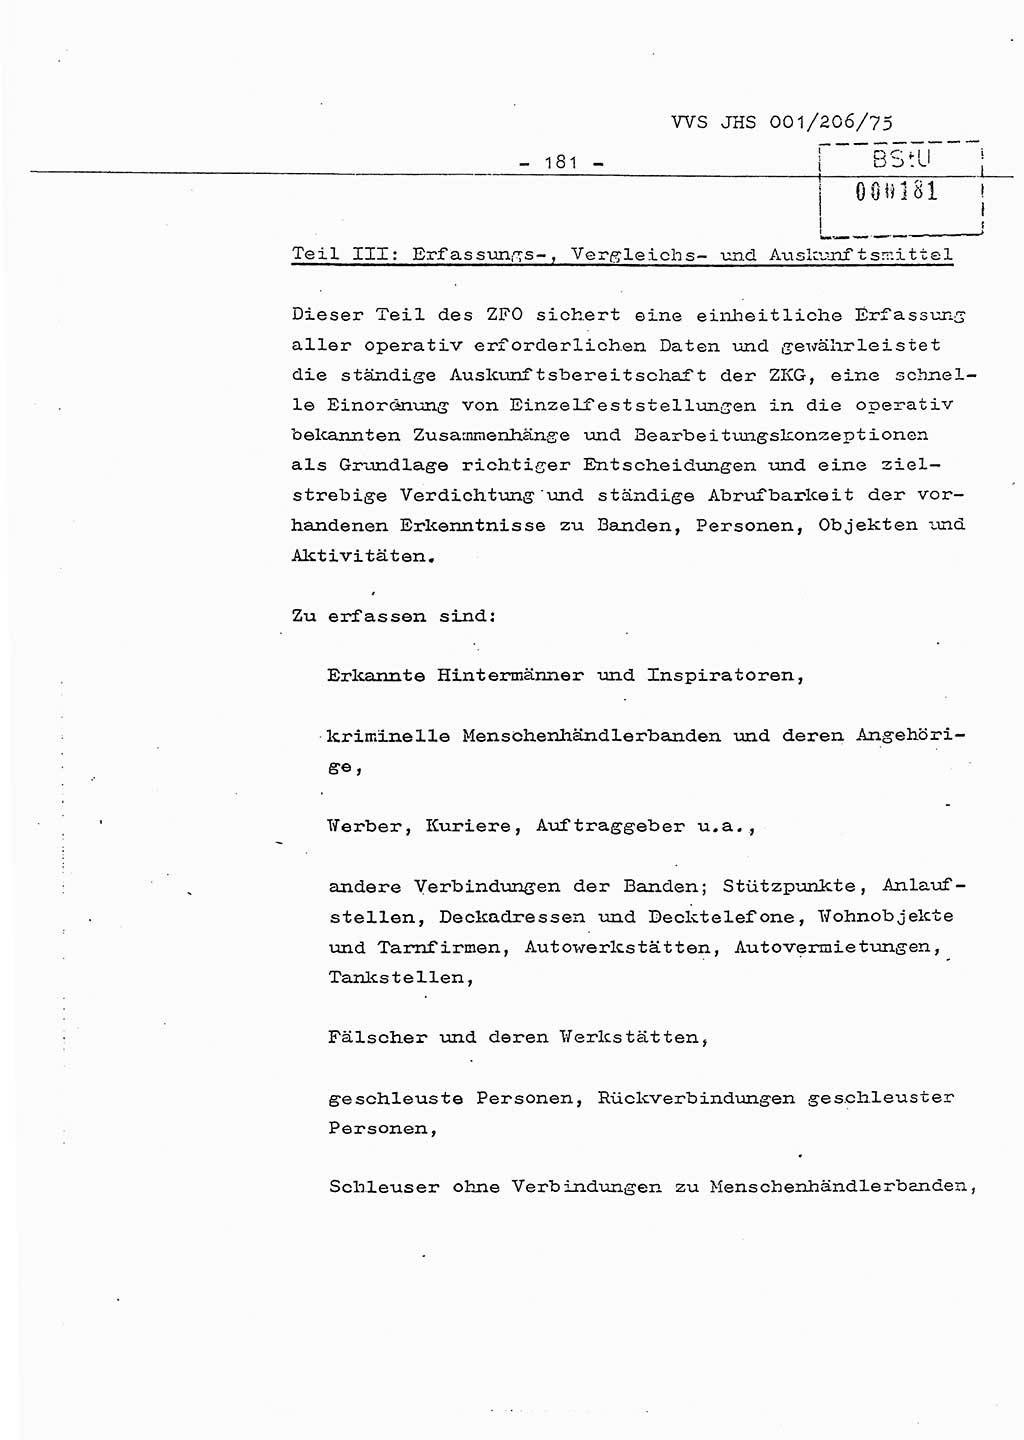 Dissertation Generalmajor Manfred Hummitzsch (Leiter der BV Leipzig), Generalmajor Heinz Fiedler (HA Ⅵ), Oberst Rolf Fister (HA Ⅸ), Ministerium für Staatssicherheit (MfS) [Deutsche Demokratische Republik (DDR)], Juristische Hochschule (JHS), Vertrauliche Verschlußsache (VVS) 001-206/75, Potsdam 1975, Seite 181 (Diss. MfS DDR JHS VVS 001-206/75 1975, S. 181)